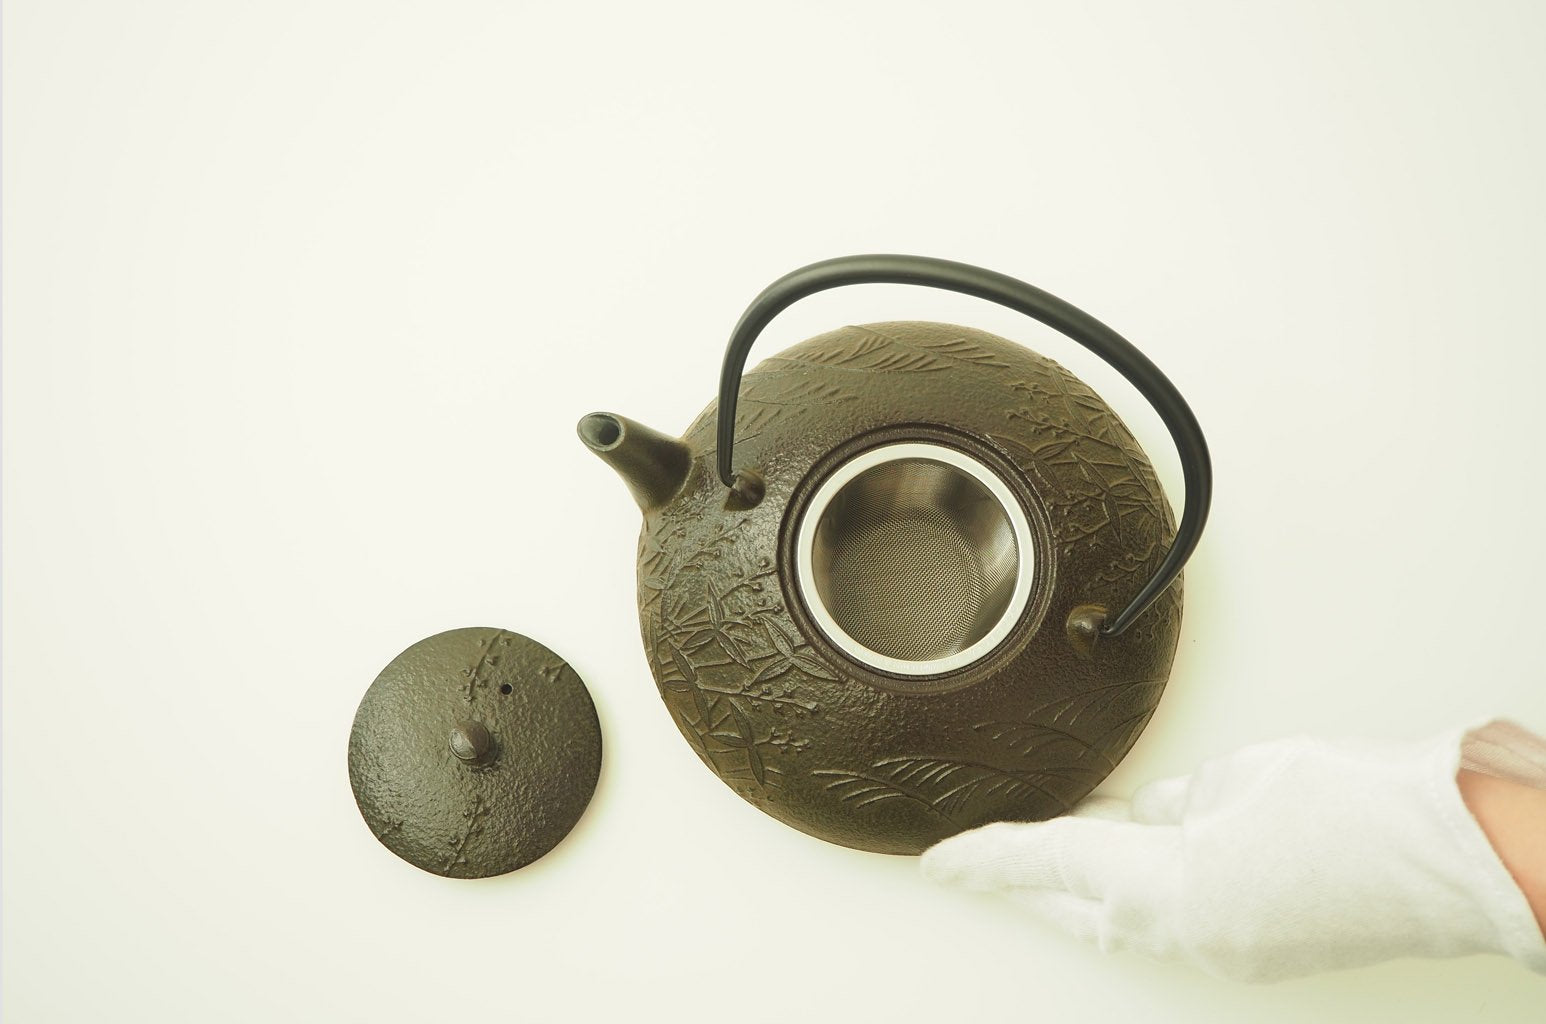 Nambu Ironware Teapot "Kusabana 0.6L"